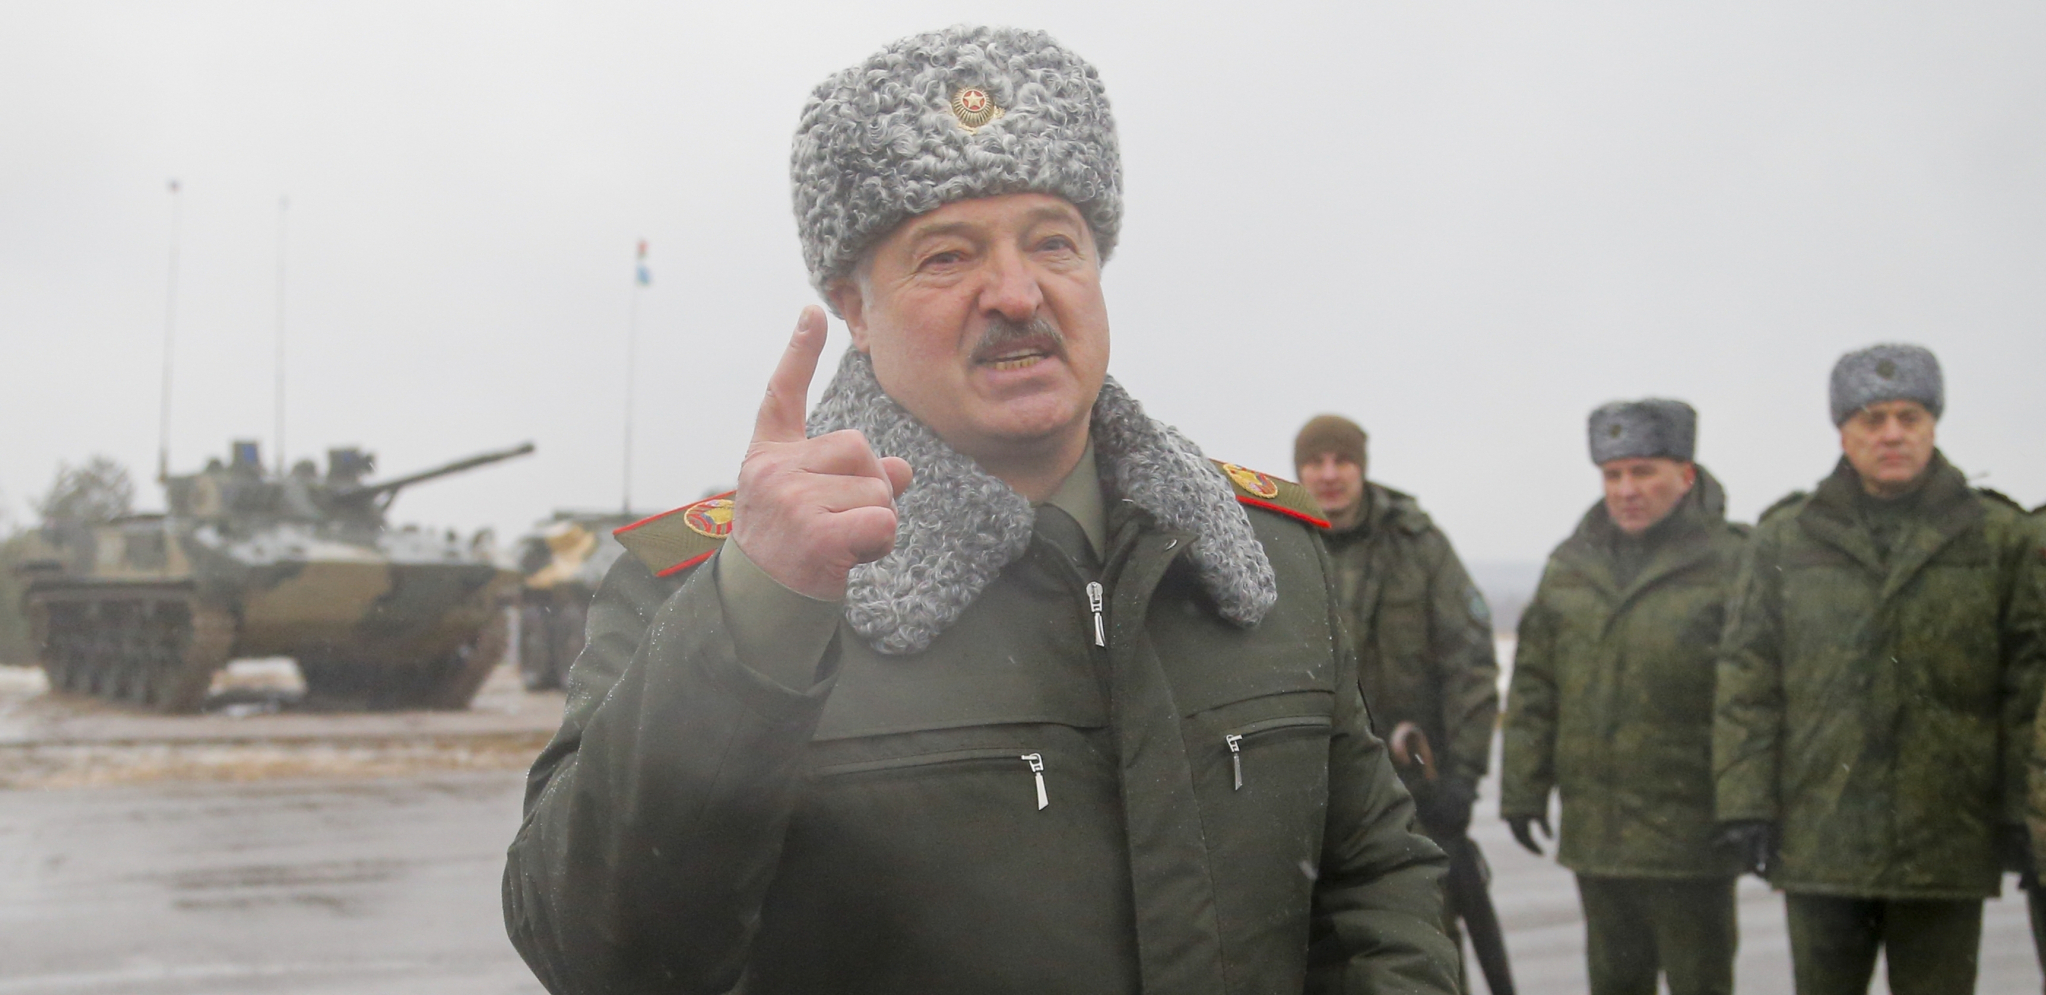 GOVOR O UKRAJINI ODRŽAĆE KINESKI PREDSEDNIK Lukašenko: "Ko ga ne posluša imaće ozbiljne posledice"